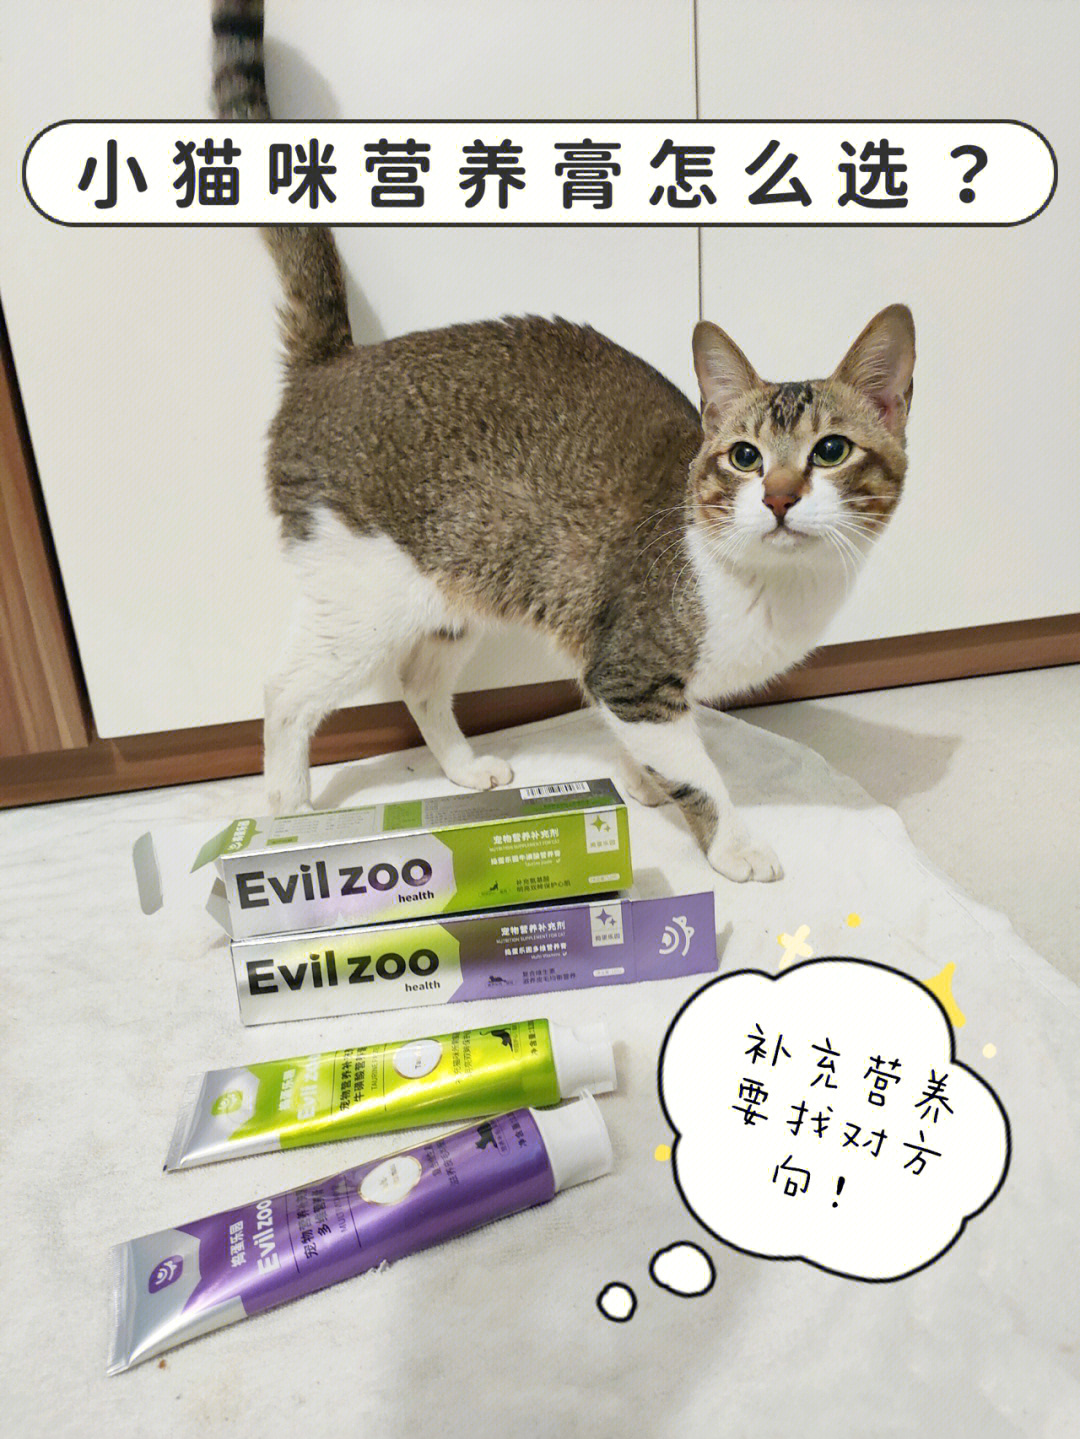 猫咪营养膏测评图片